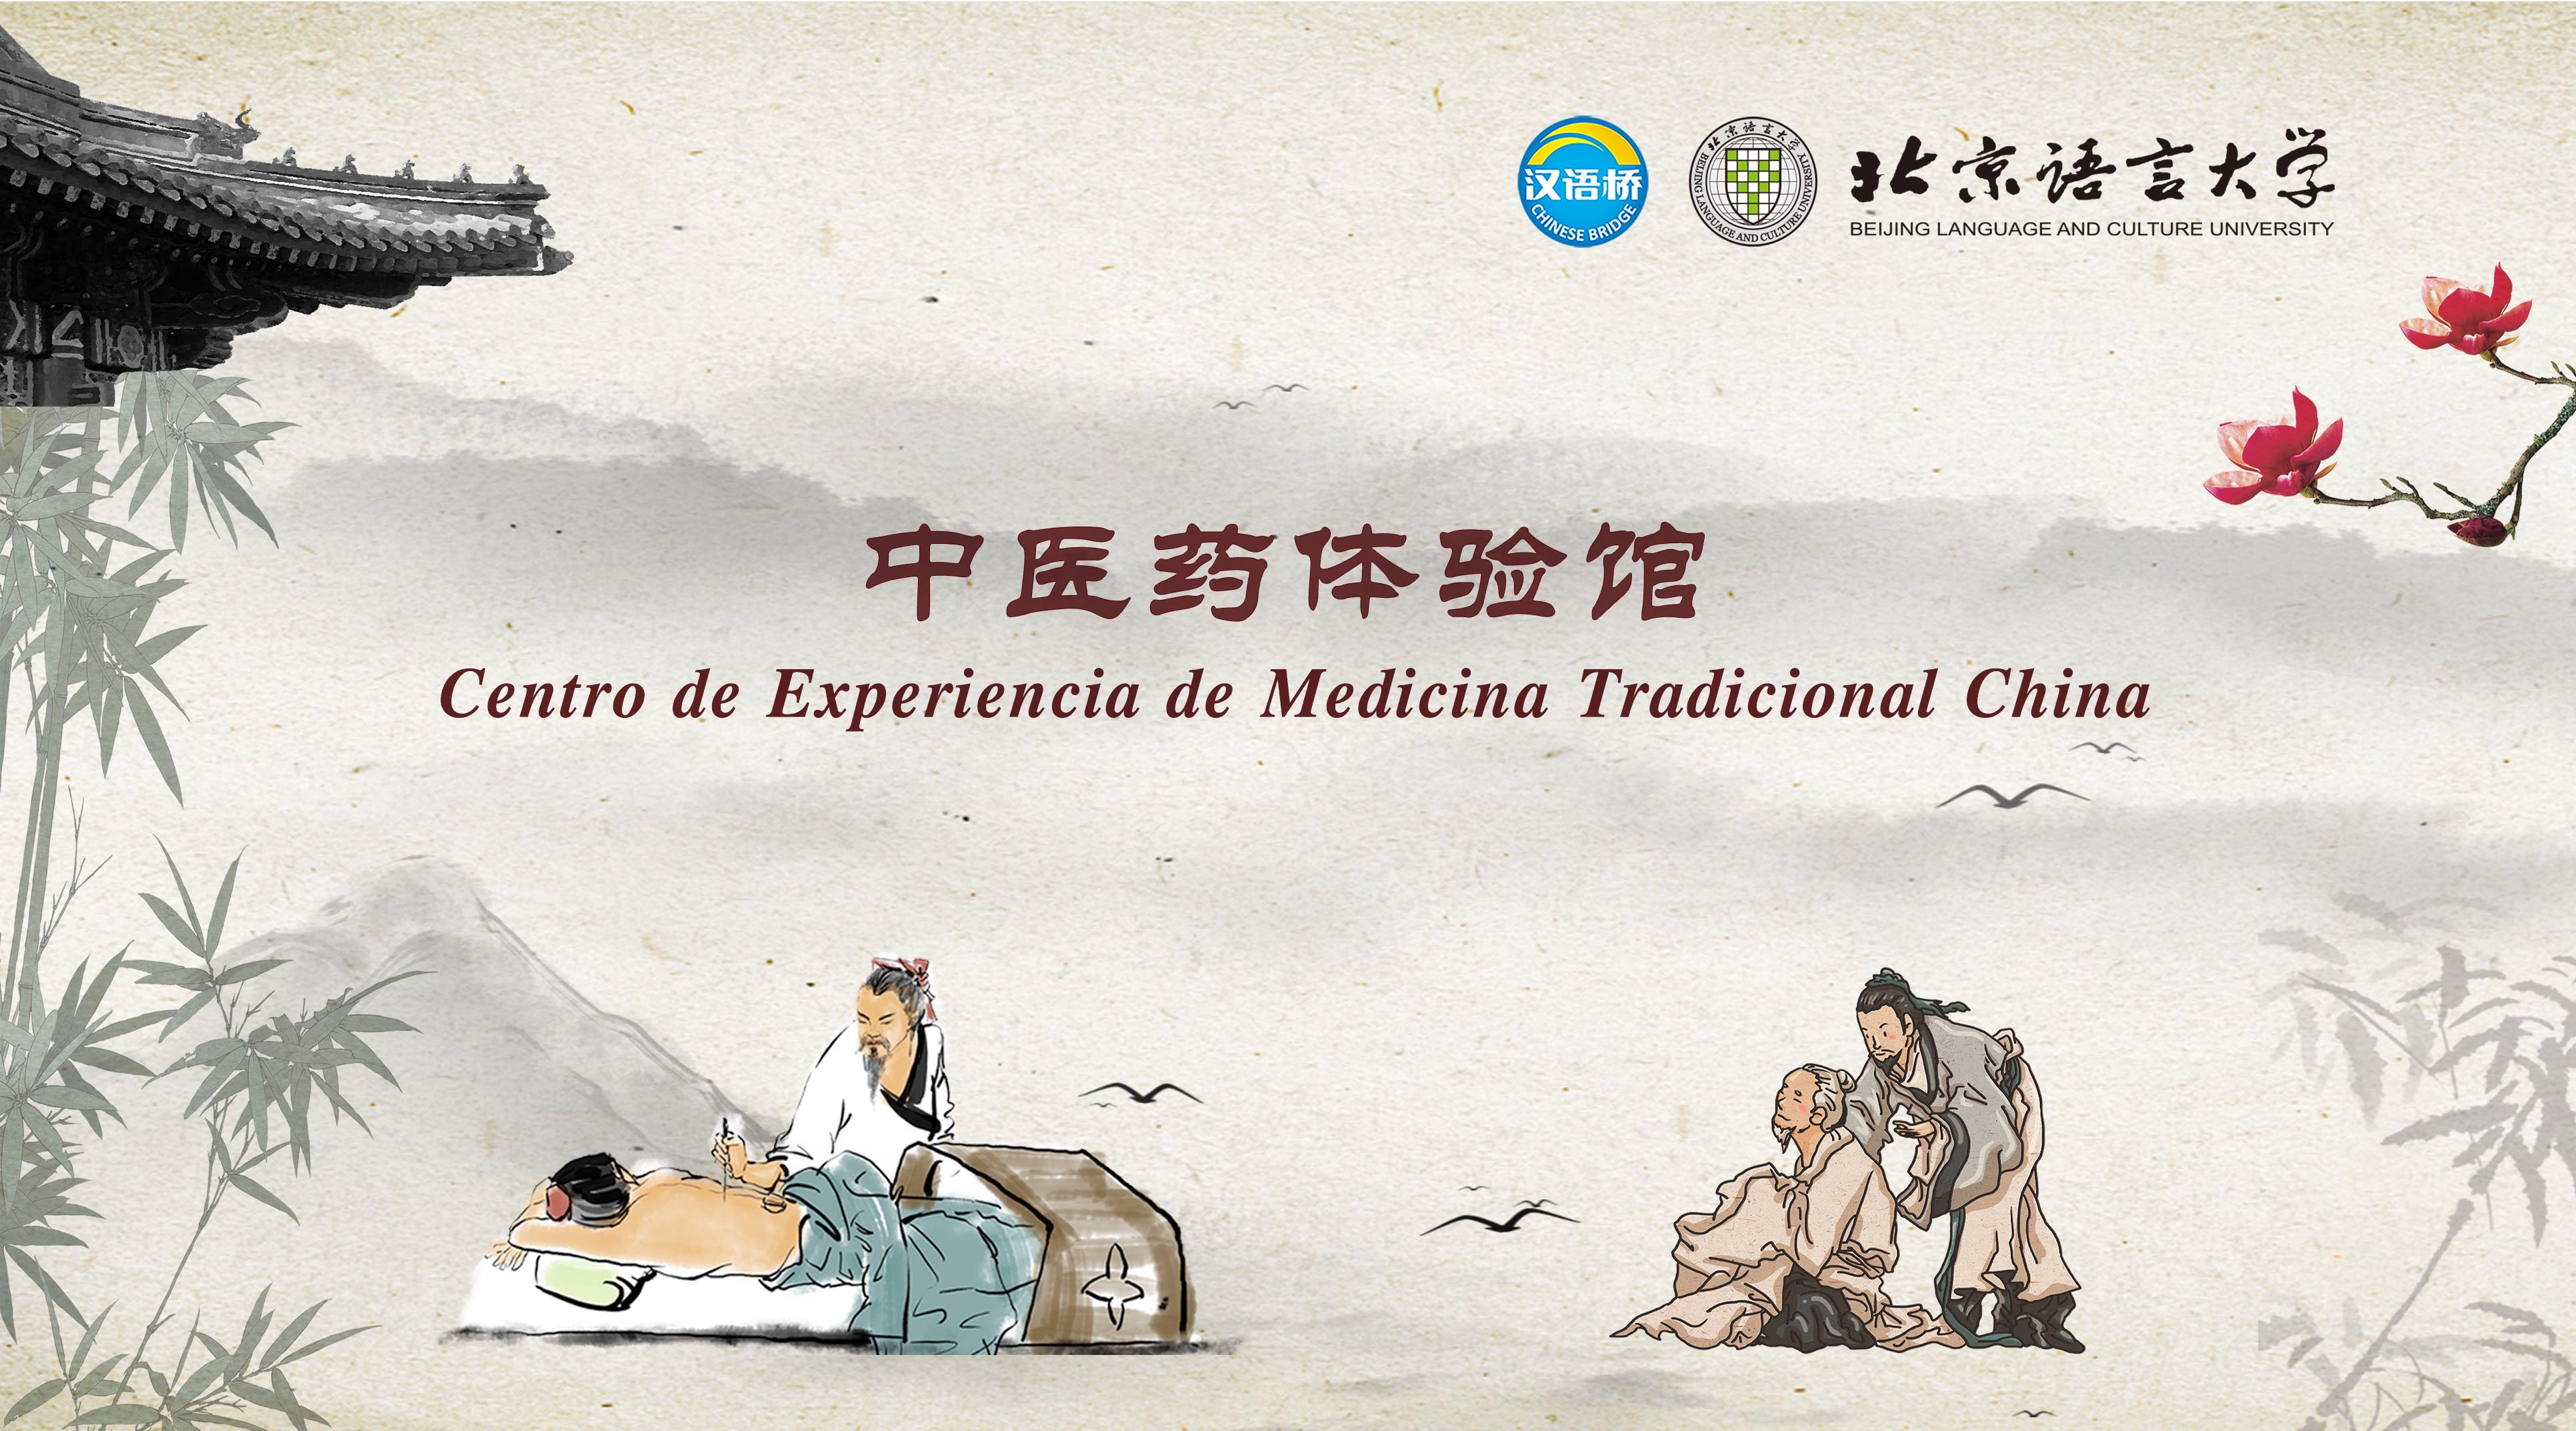 Centro de Experiencia de Medicina Tradicional China